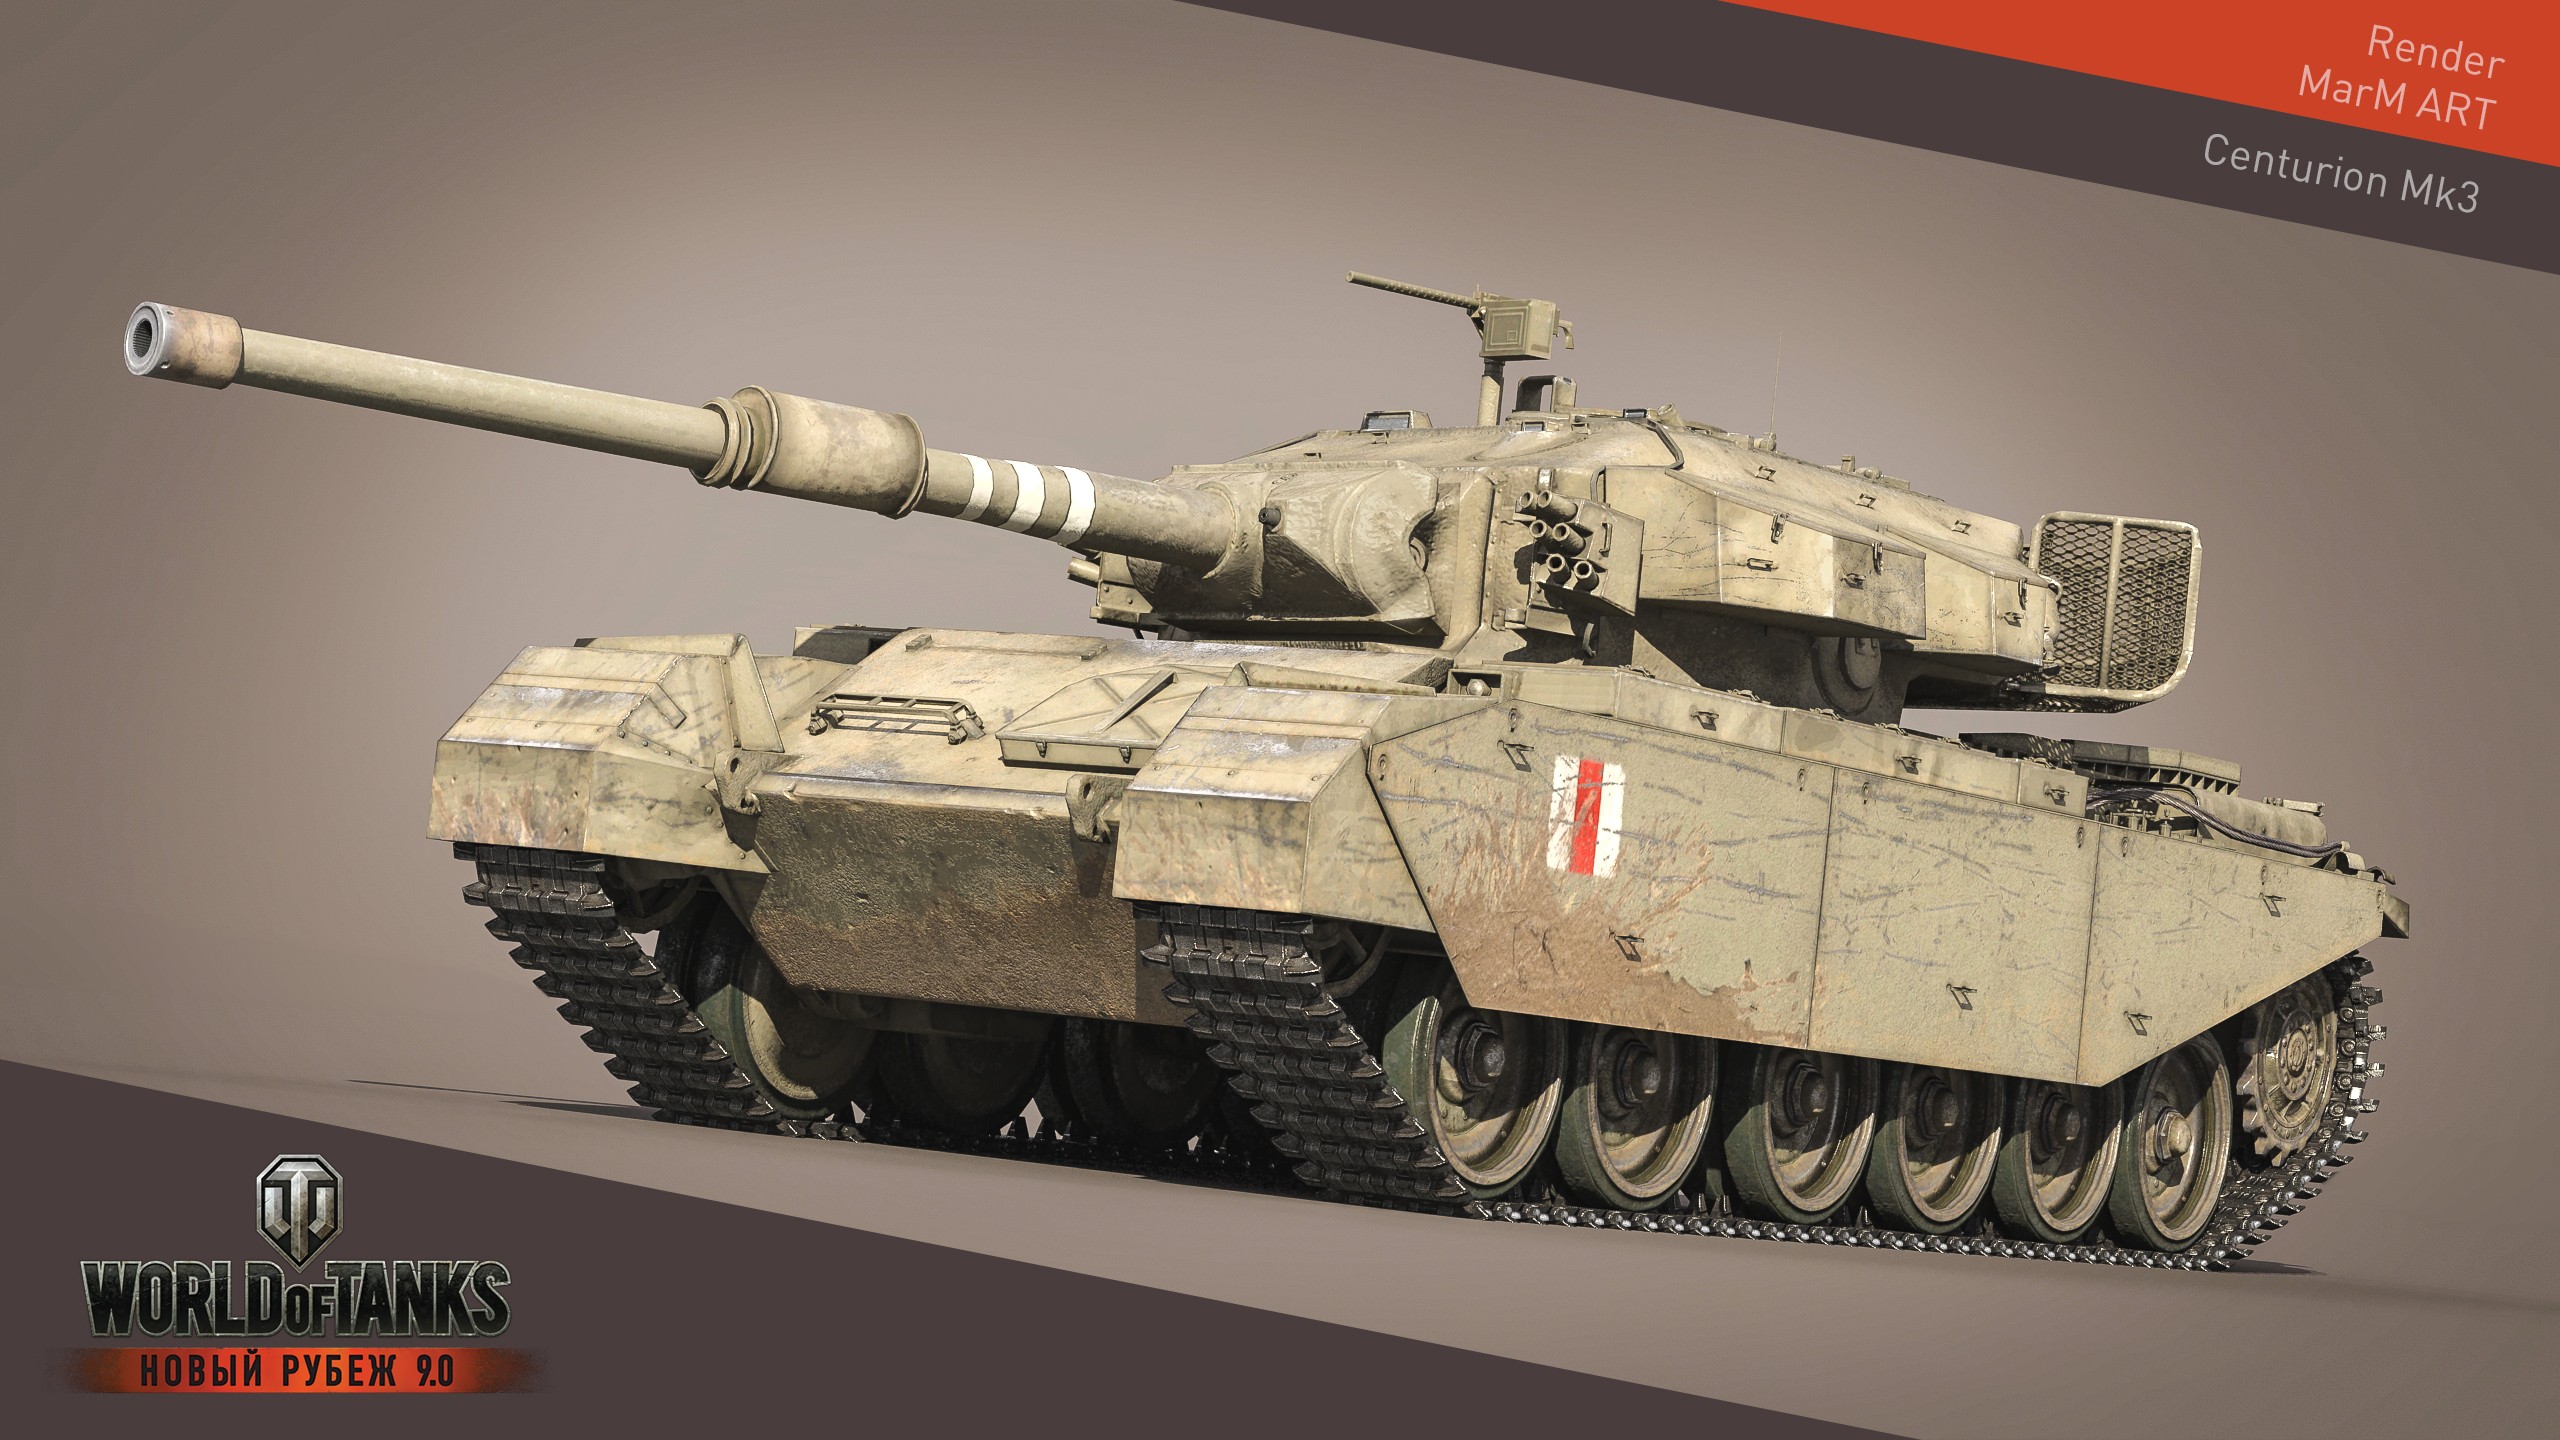 General 2560x1440 World of Tanks tank wargaming video games CGI